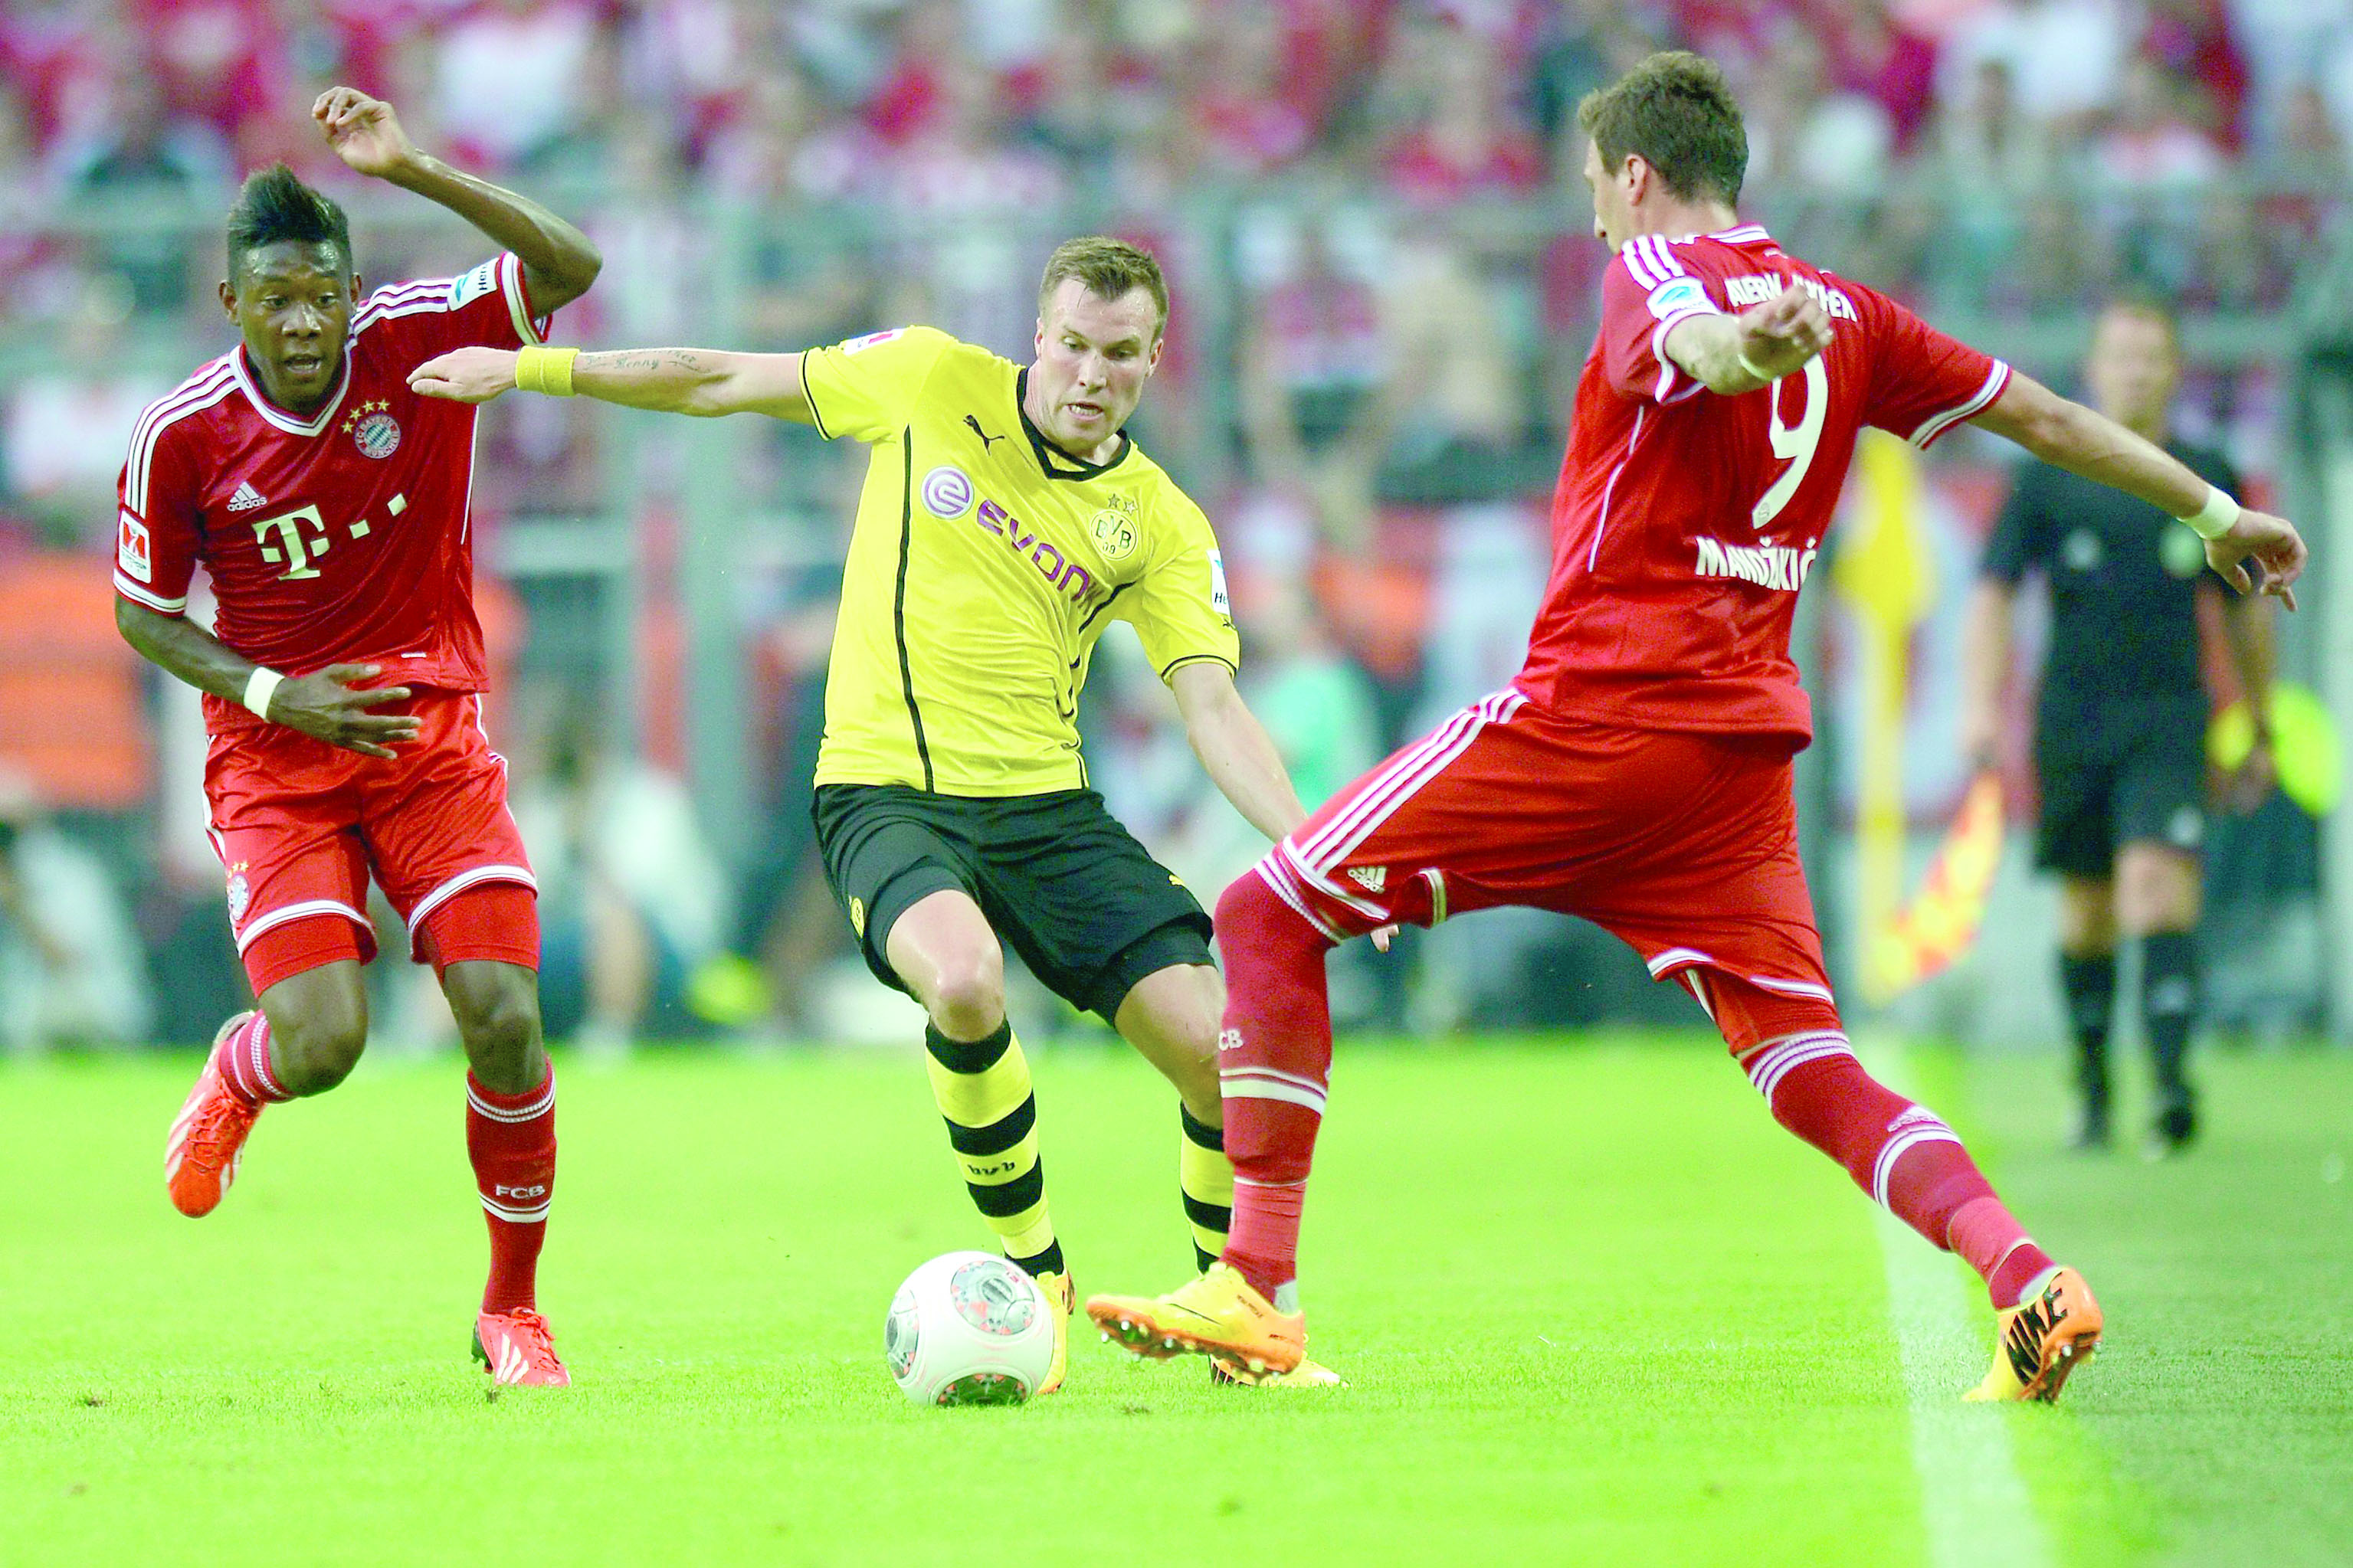 مواجهة مرتقبة بين دورتموند وبايرن ميونيخ في كأس السوبر الألمانية